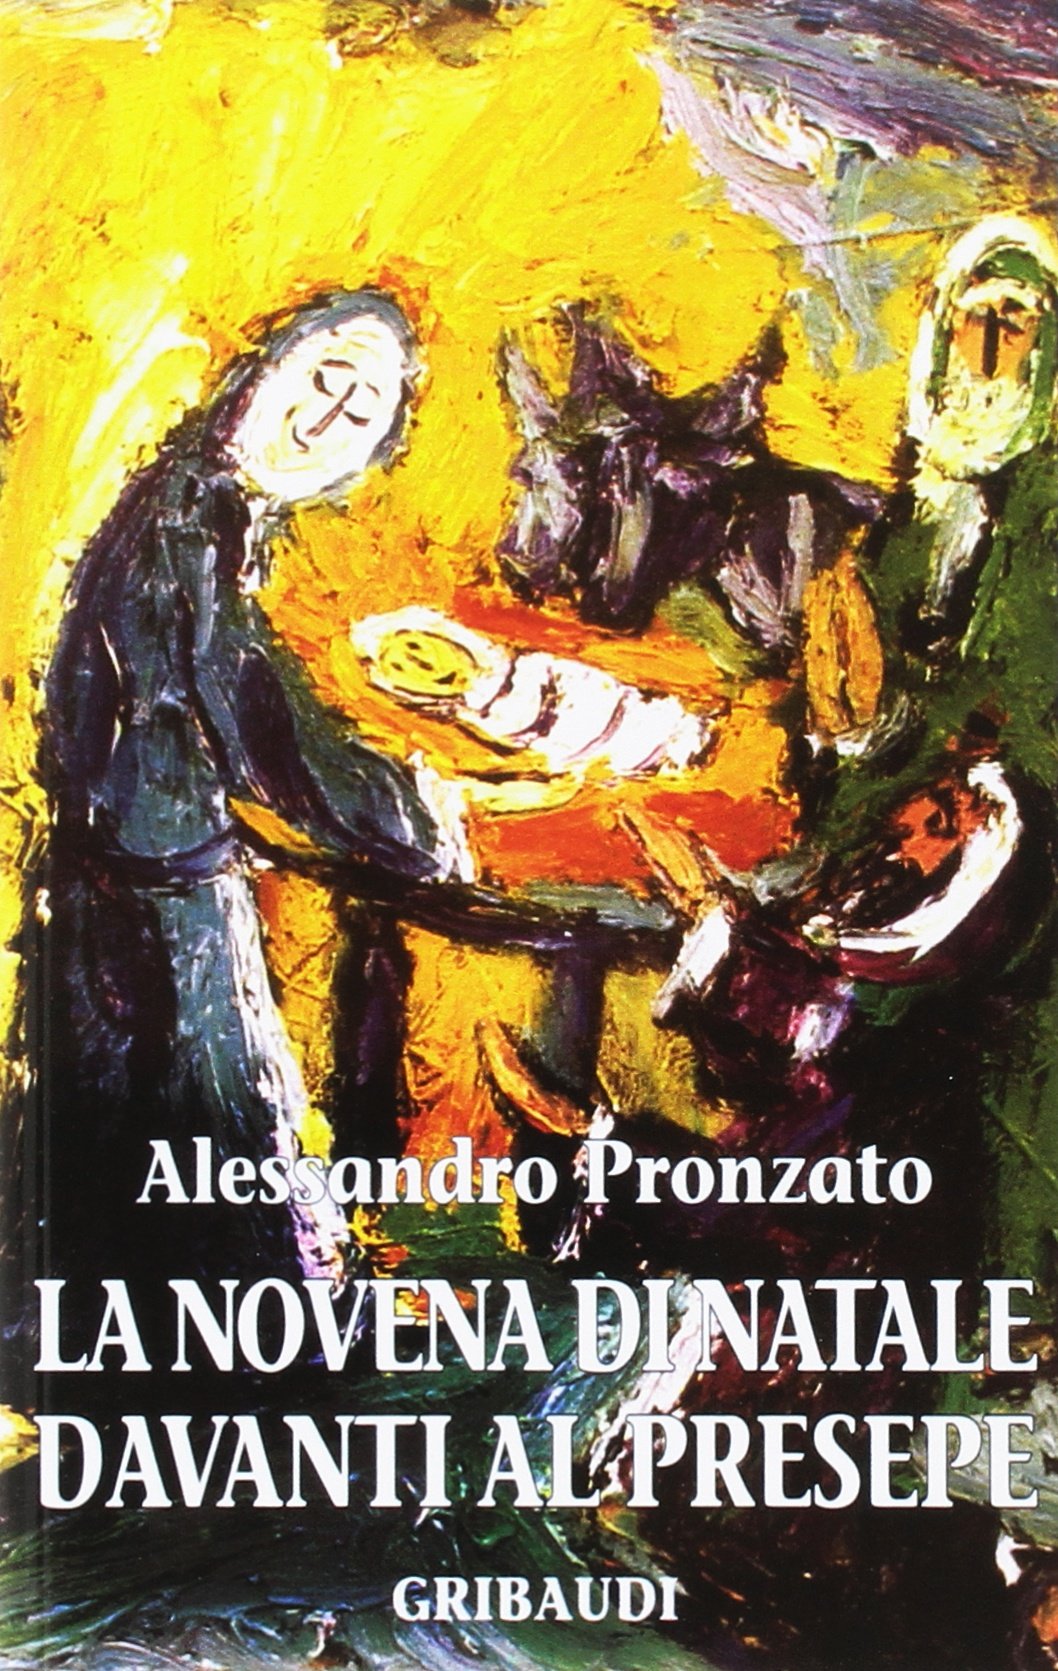 Alessandro Pronzato - La novena di Natale davanti al Presepe - Clicca l'immagine per chiudere